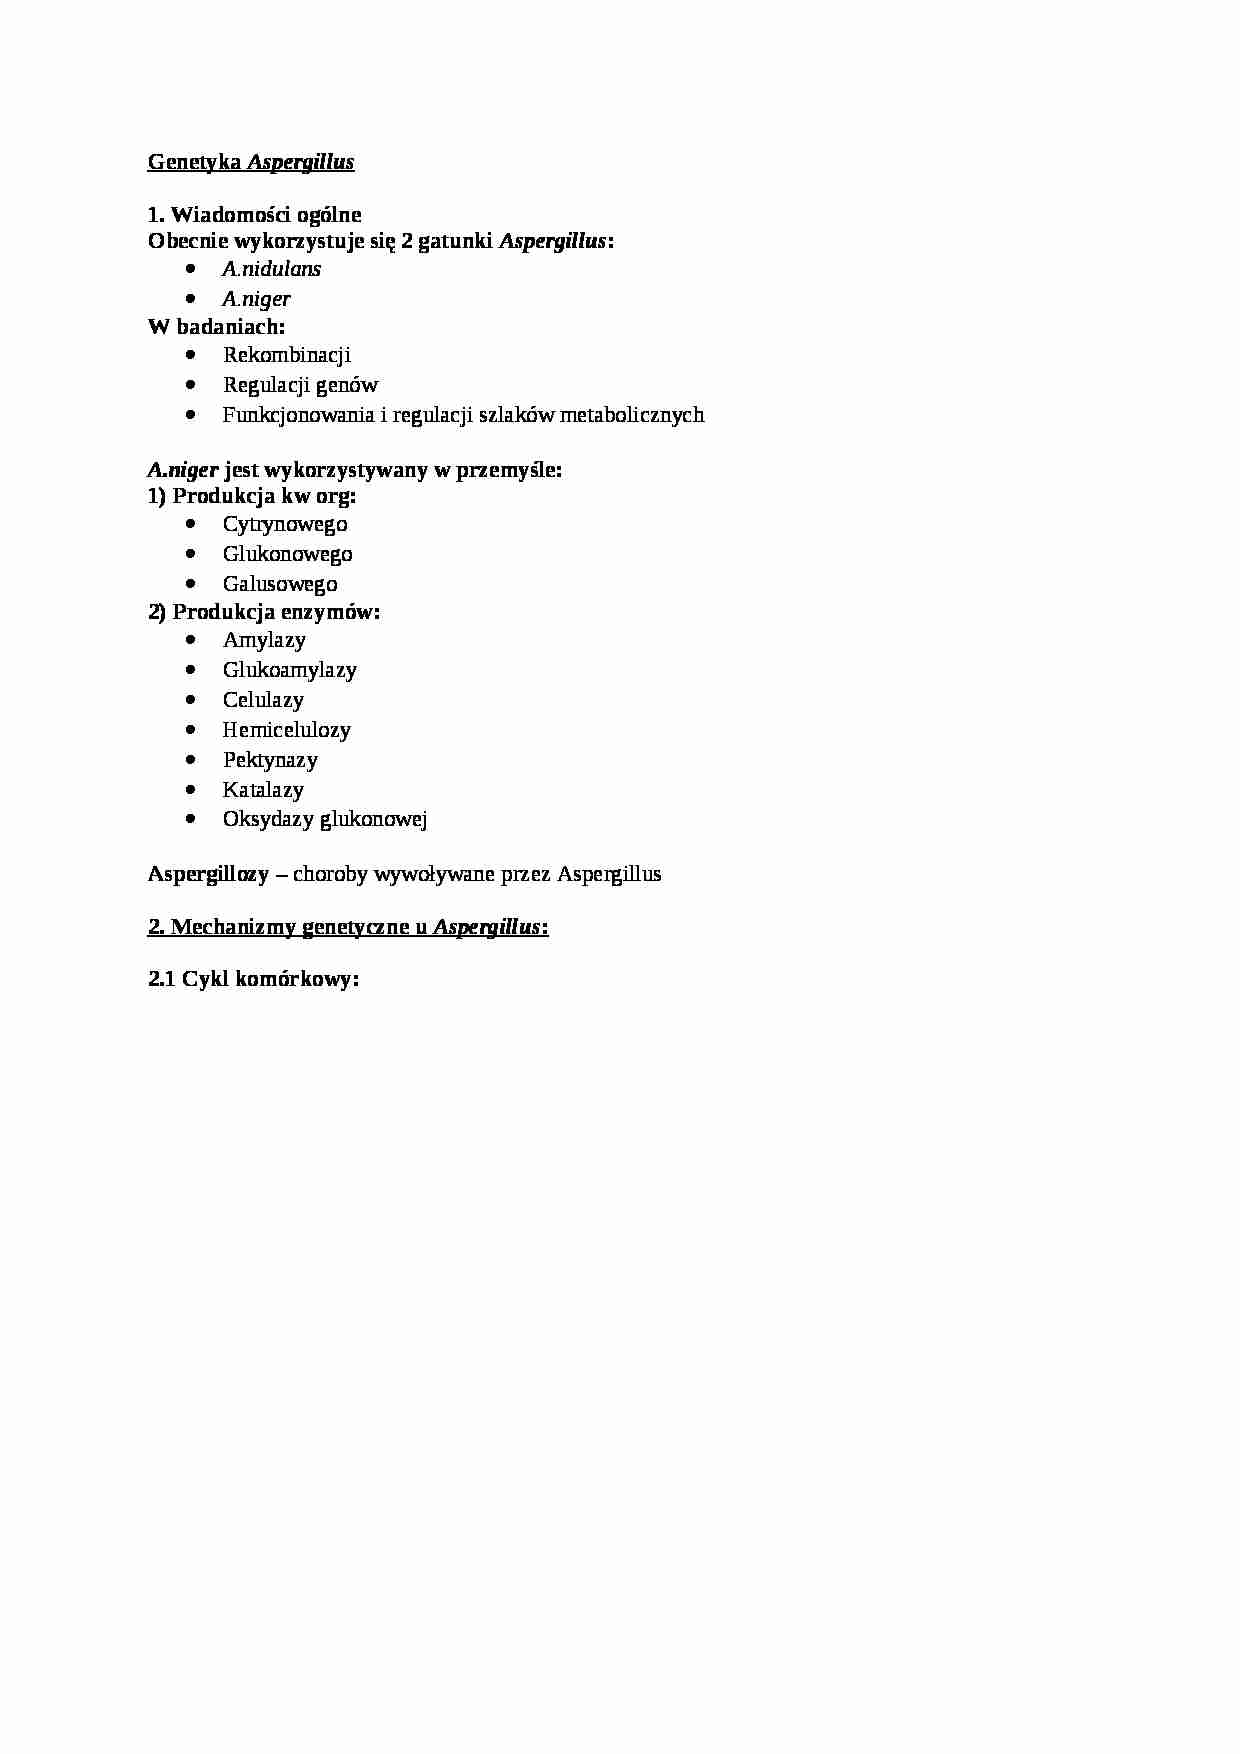  Genetyka Aspergillus - omówienie - strona 1